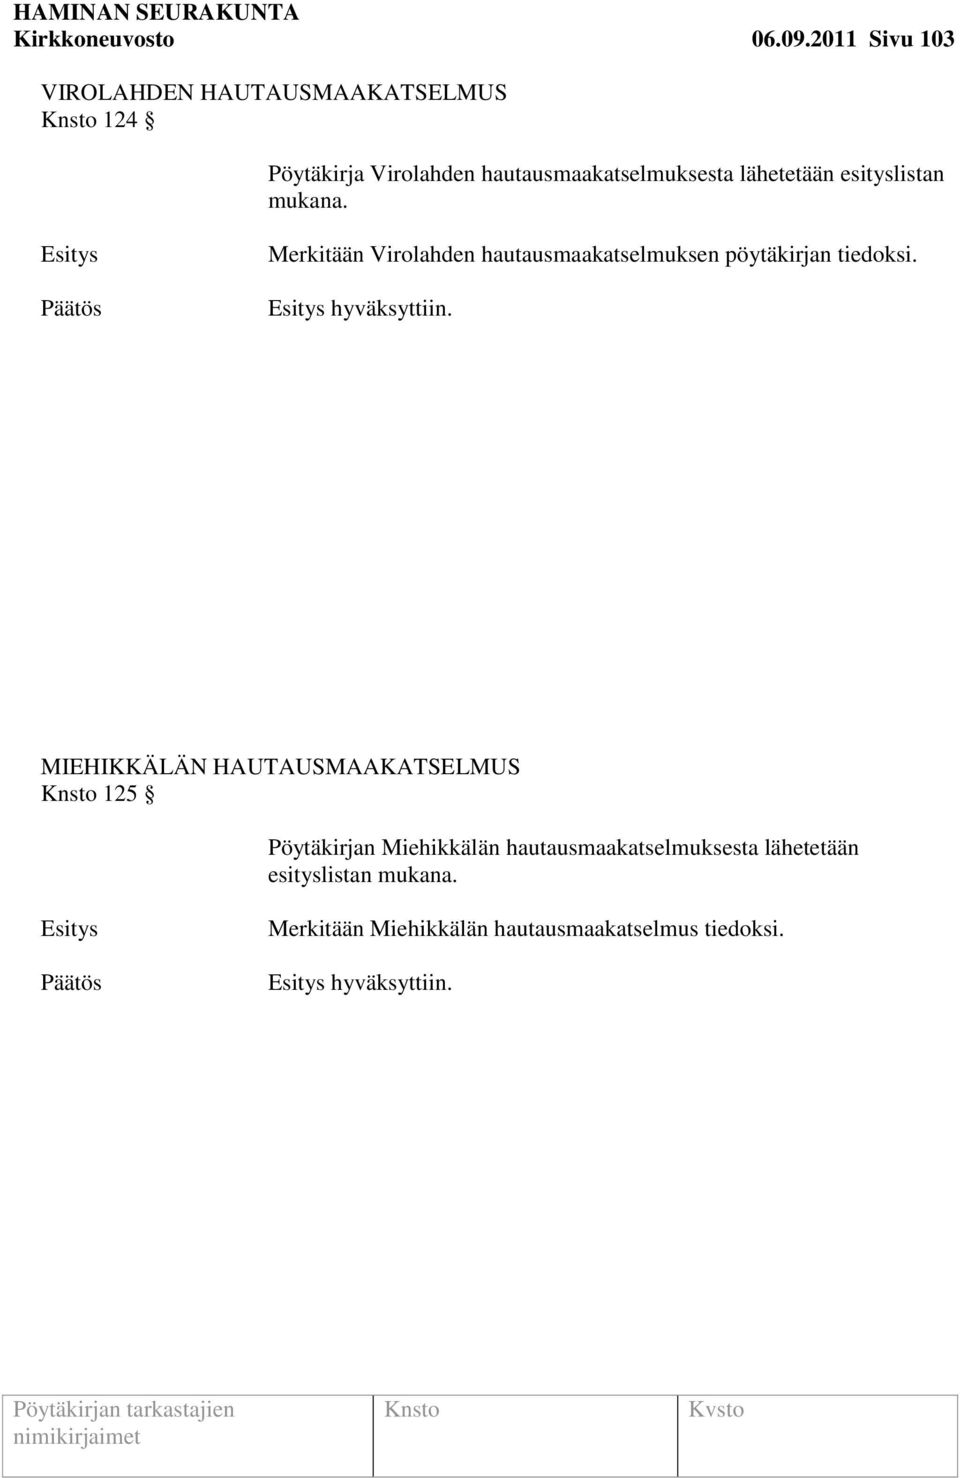 lähetetään esityslistan mukana. Merkitään Virolahden hautausmaakatselmuksen pöytäkirjan tiedoksi.